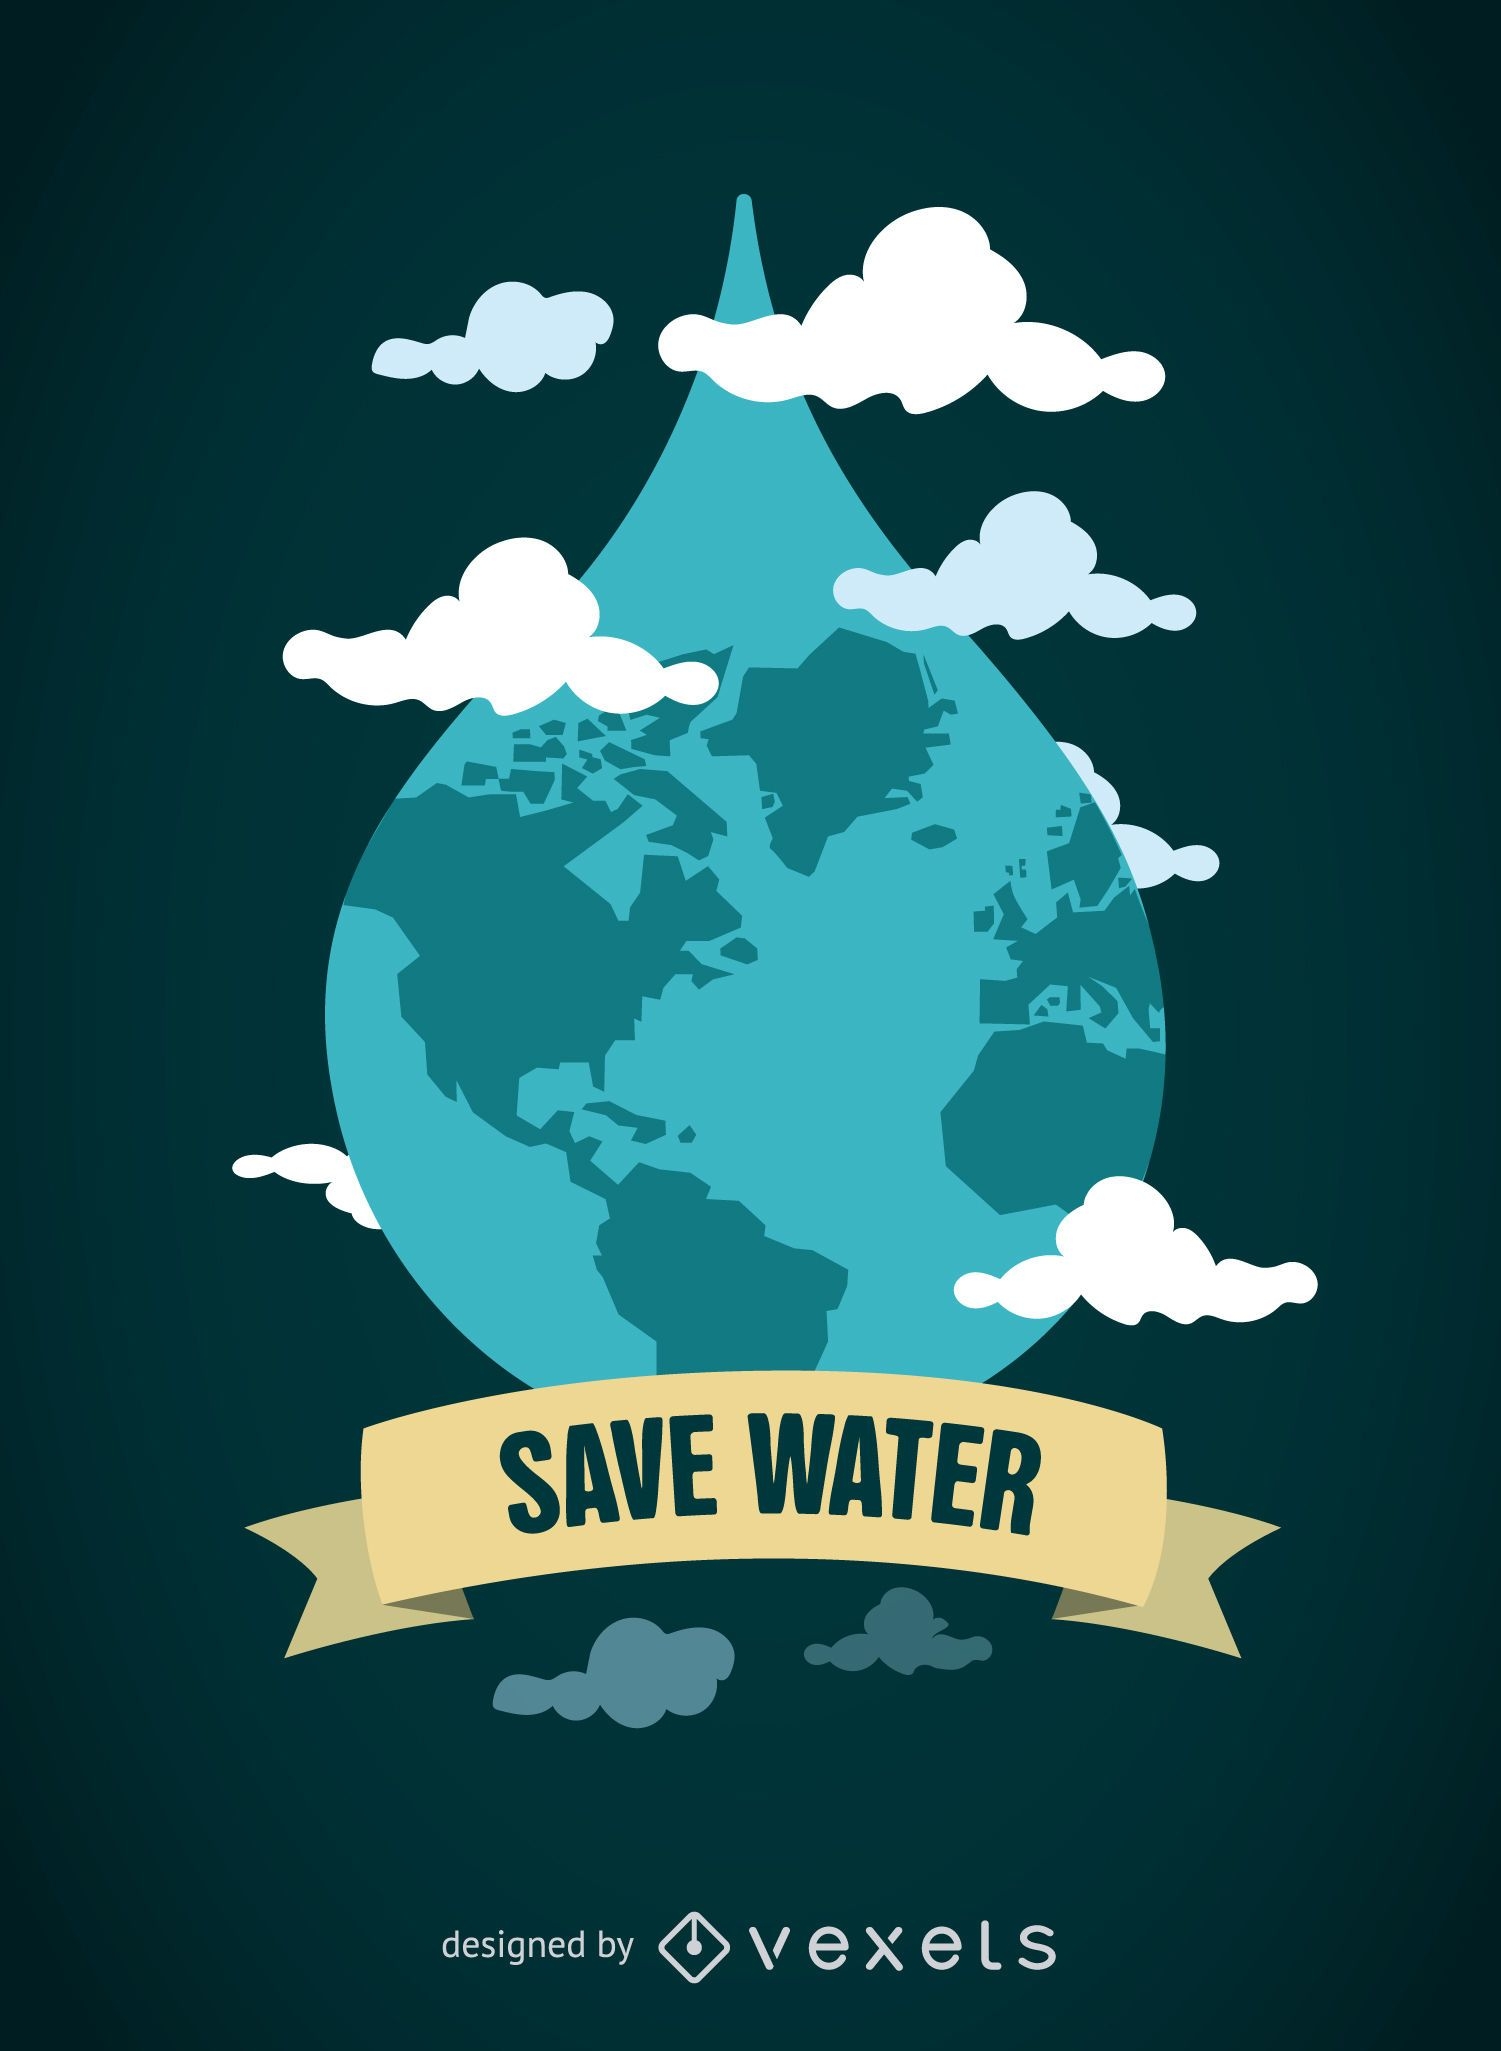 Dia Mundial da Água - Mundo em queda com emblema